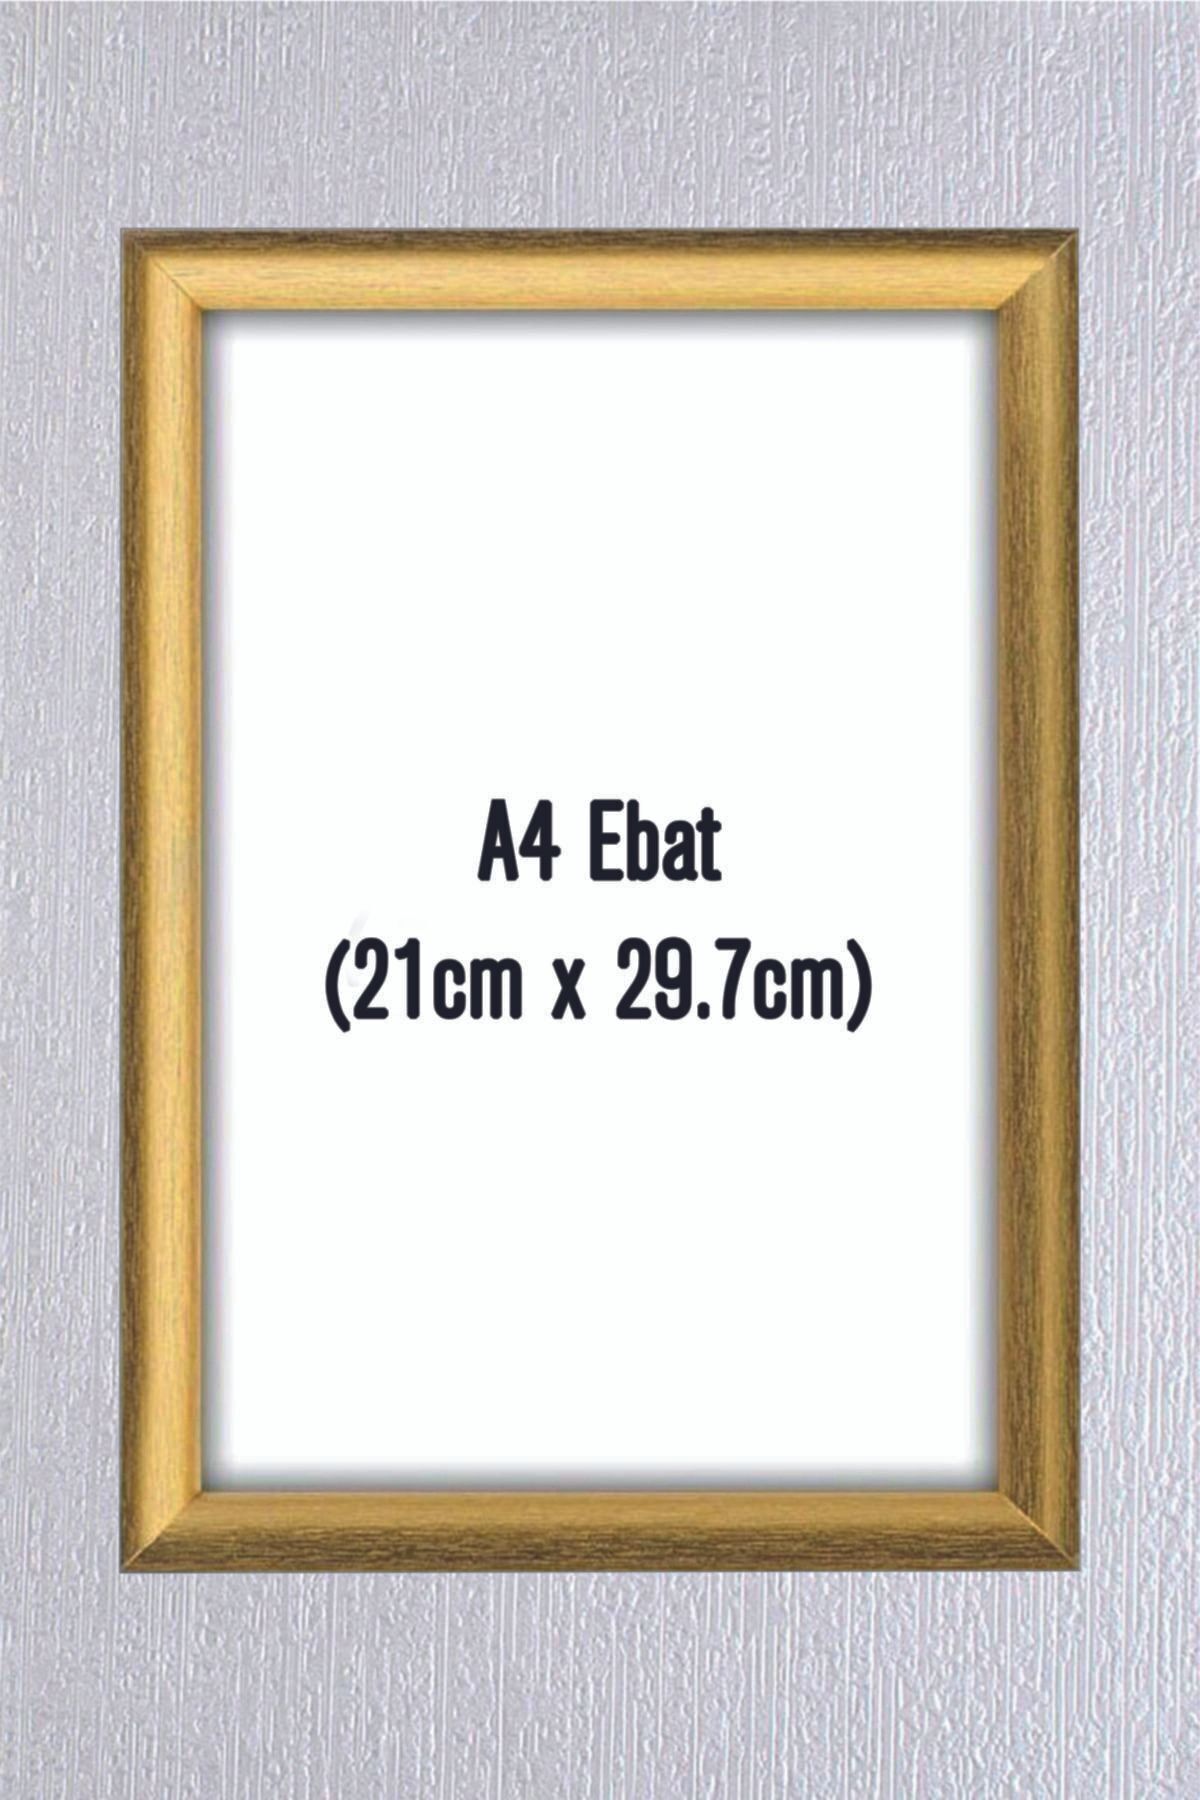 hediyekolisi A4 Altın Renkte Çerçeve Belge Sertifika Ve Resim Için 21cm X 29,7 Cm